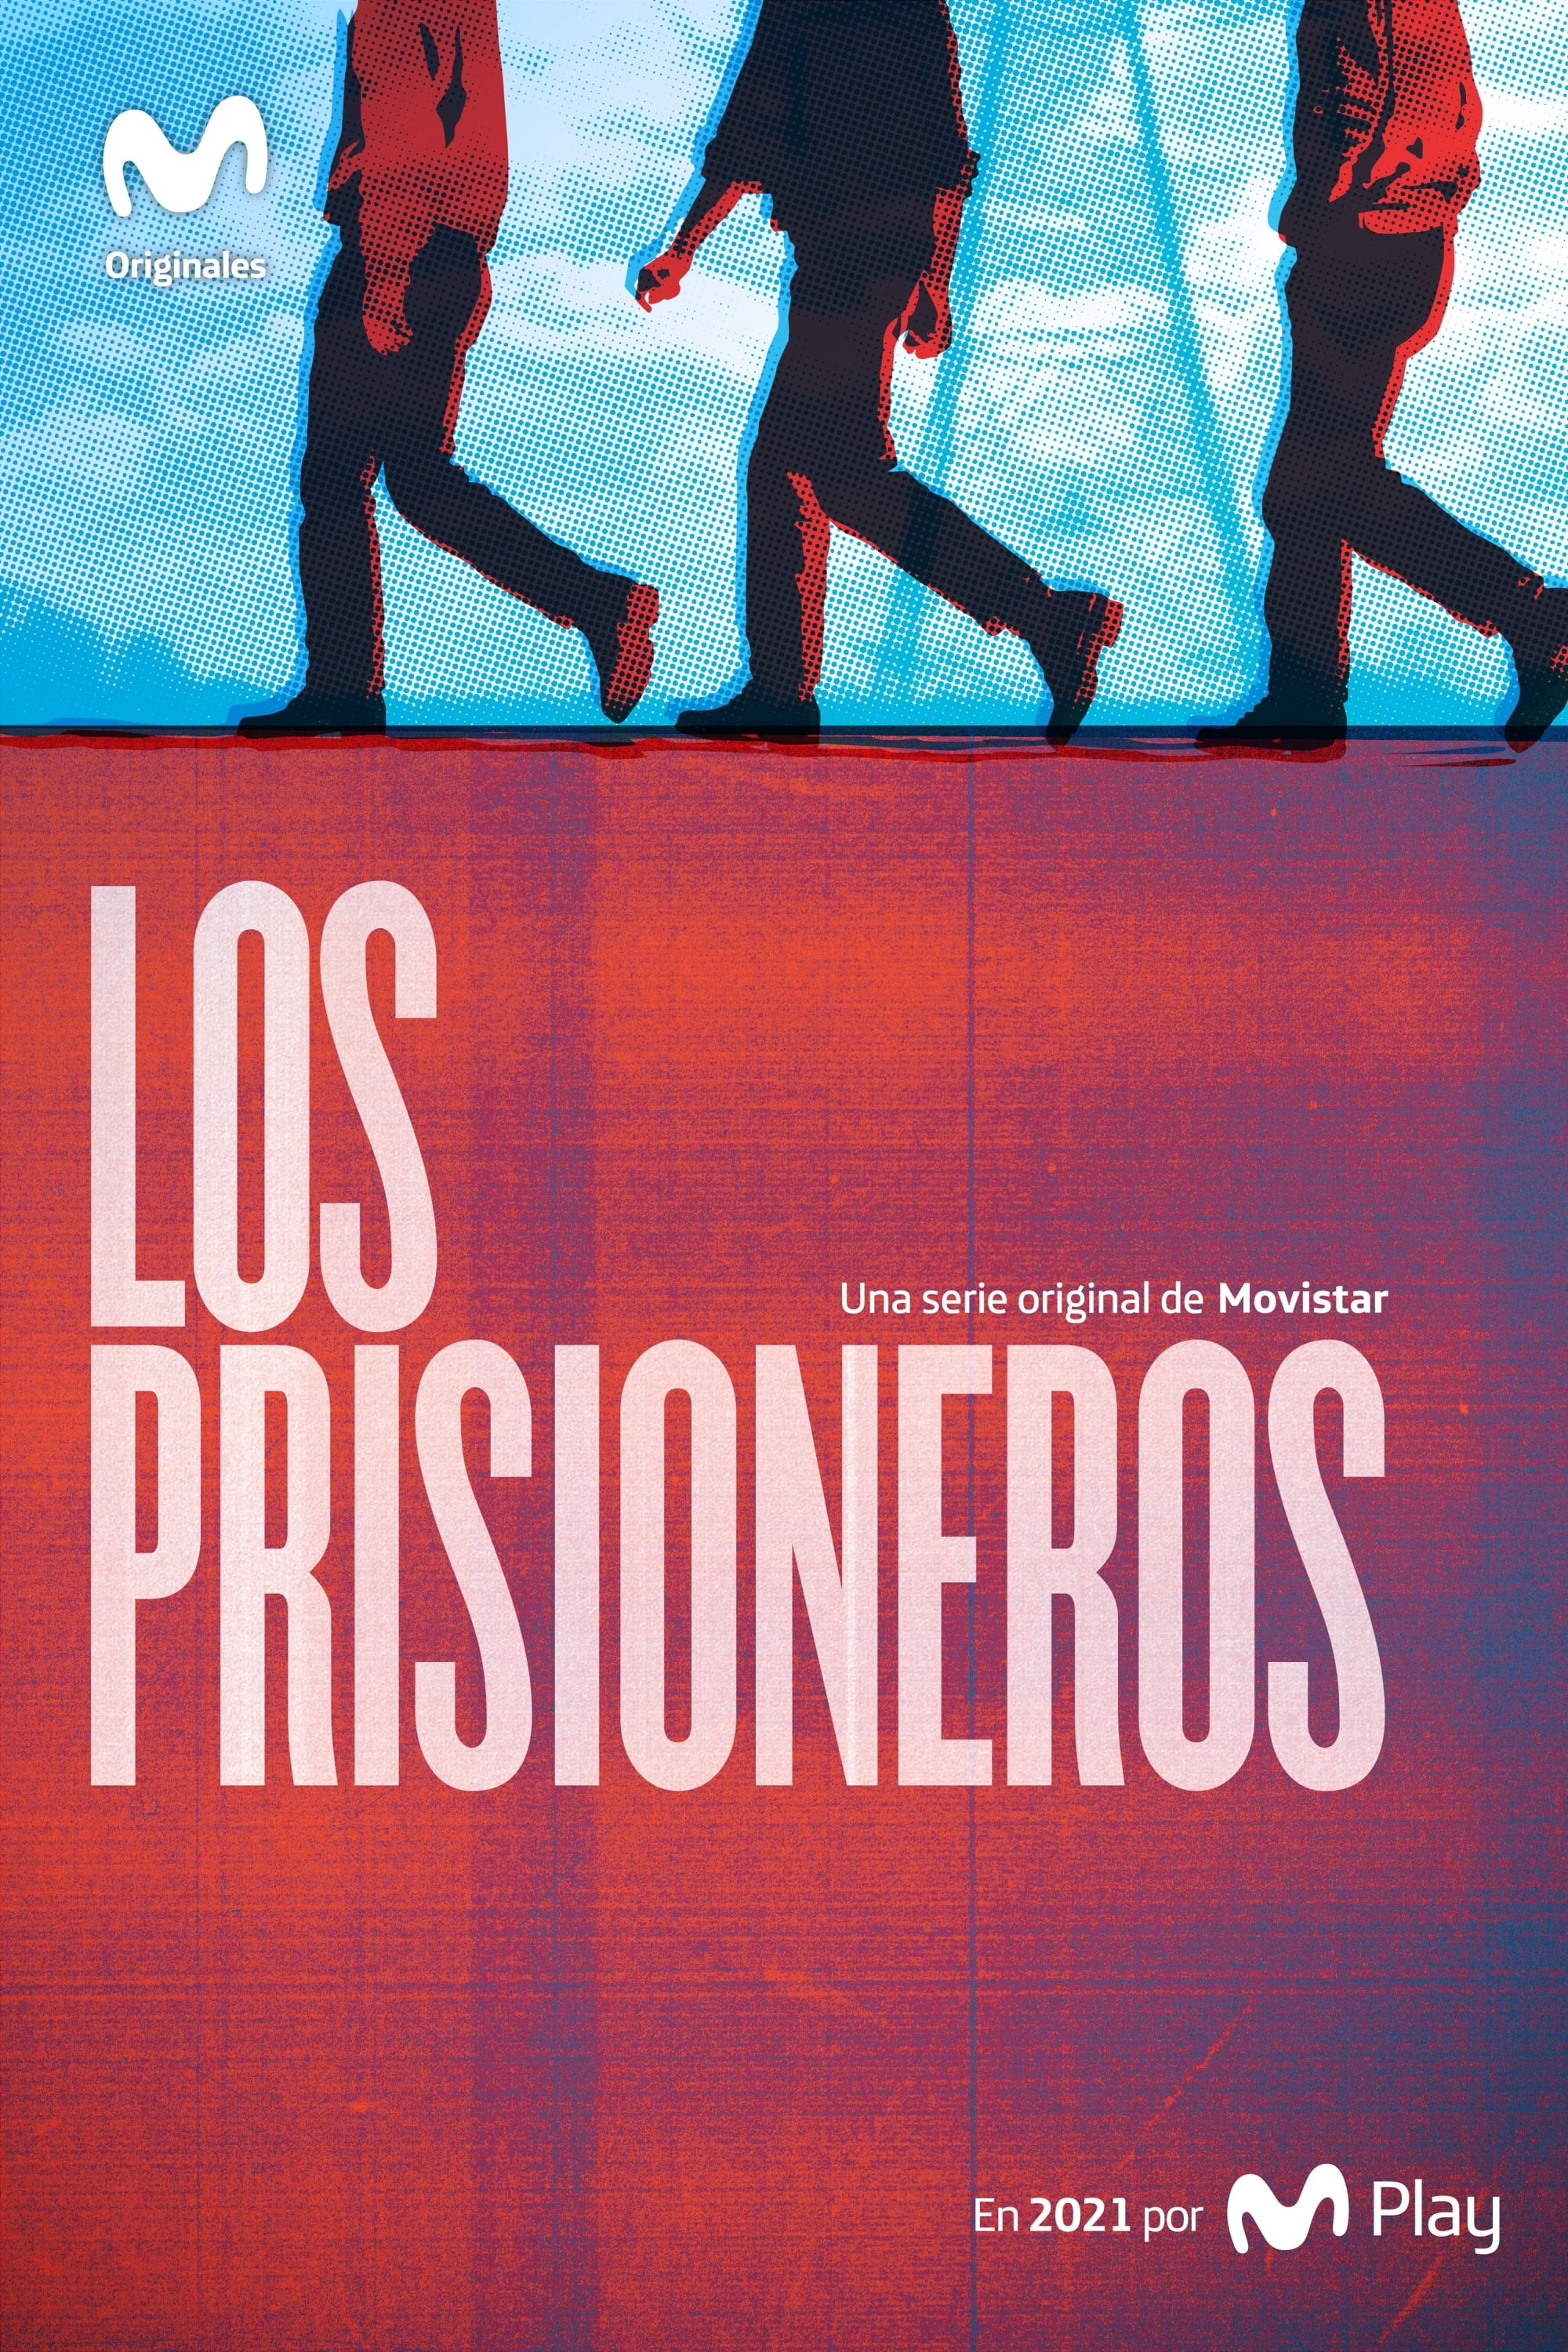 Los Prisioneros TV Shows About Rock Band